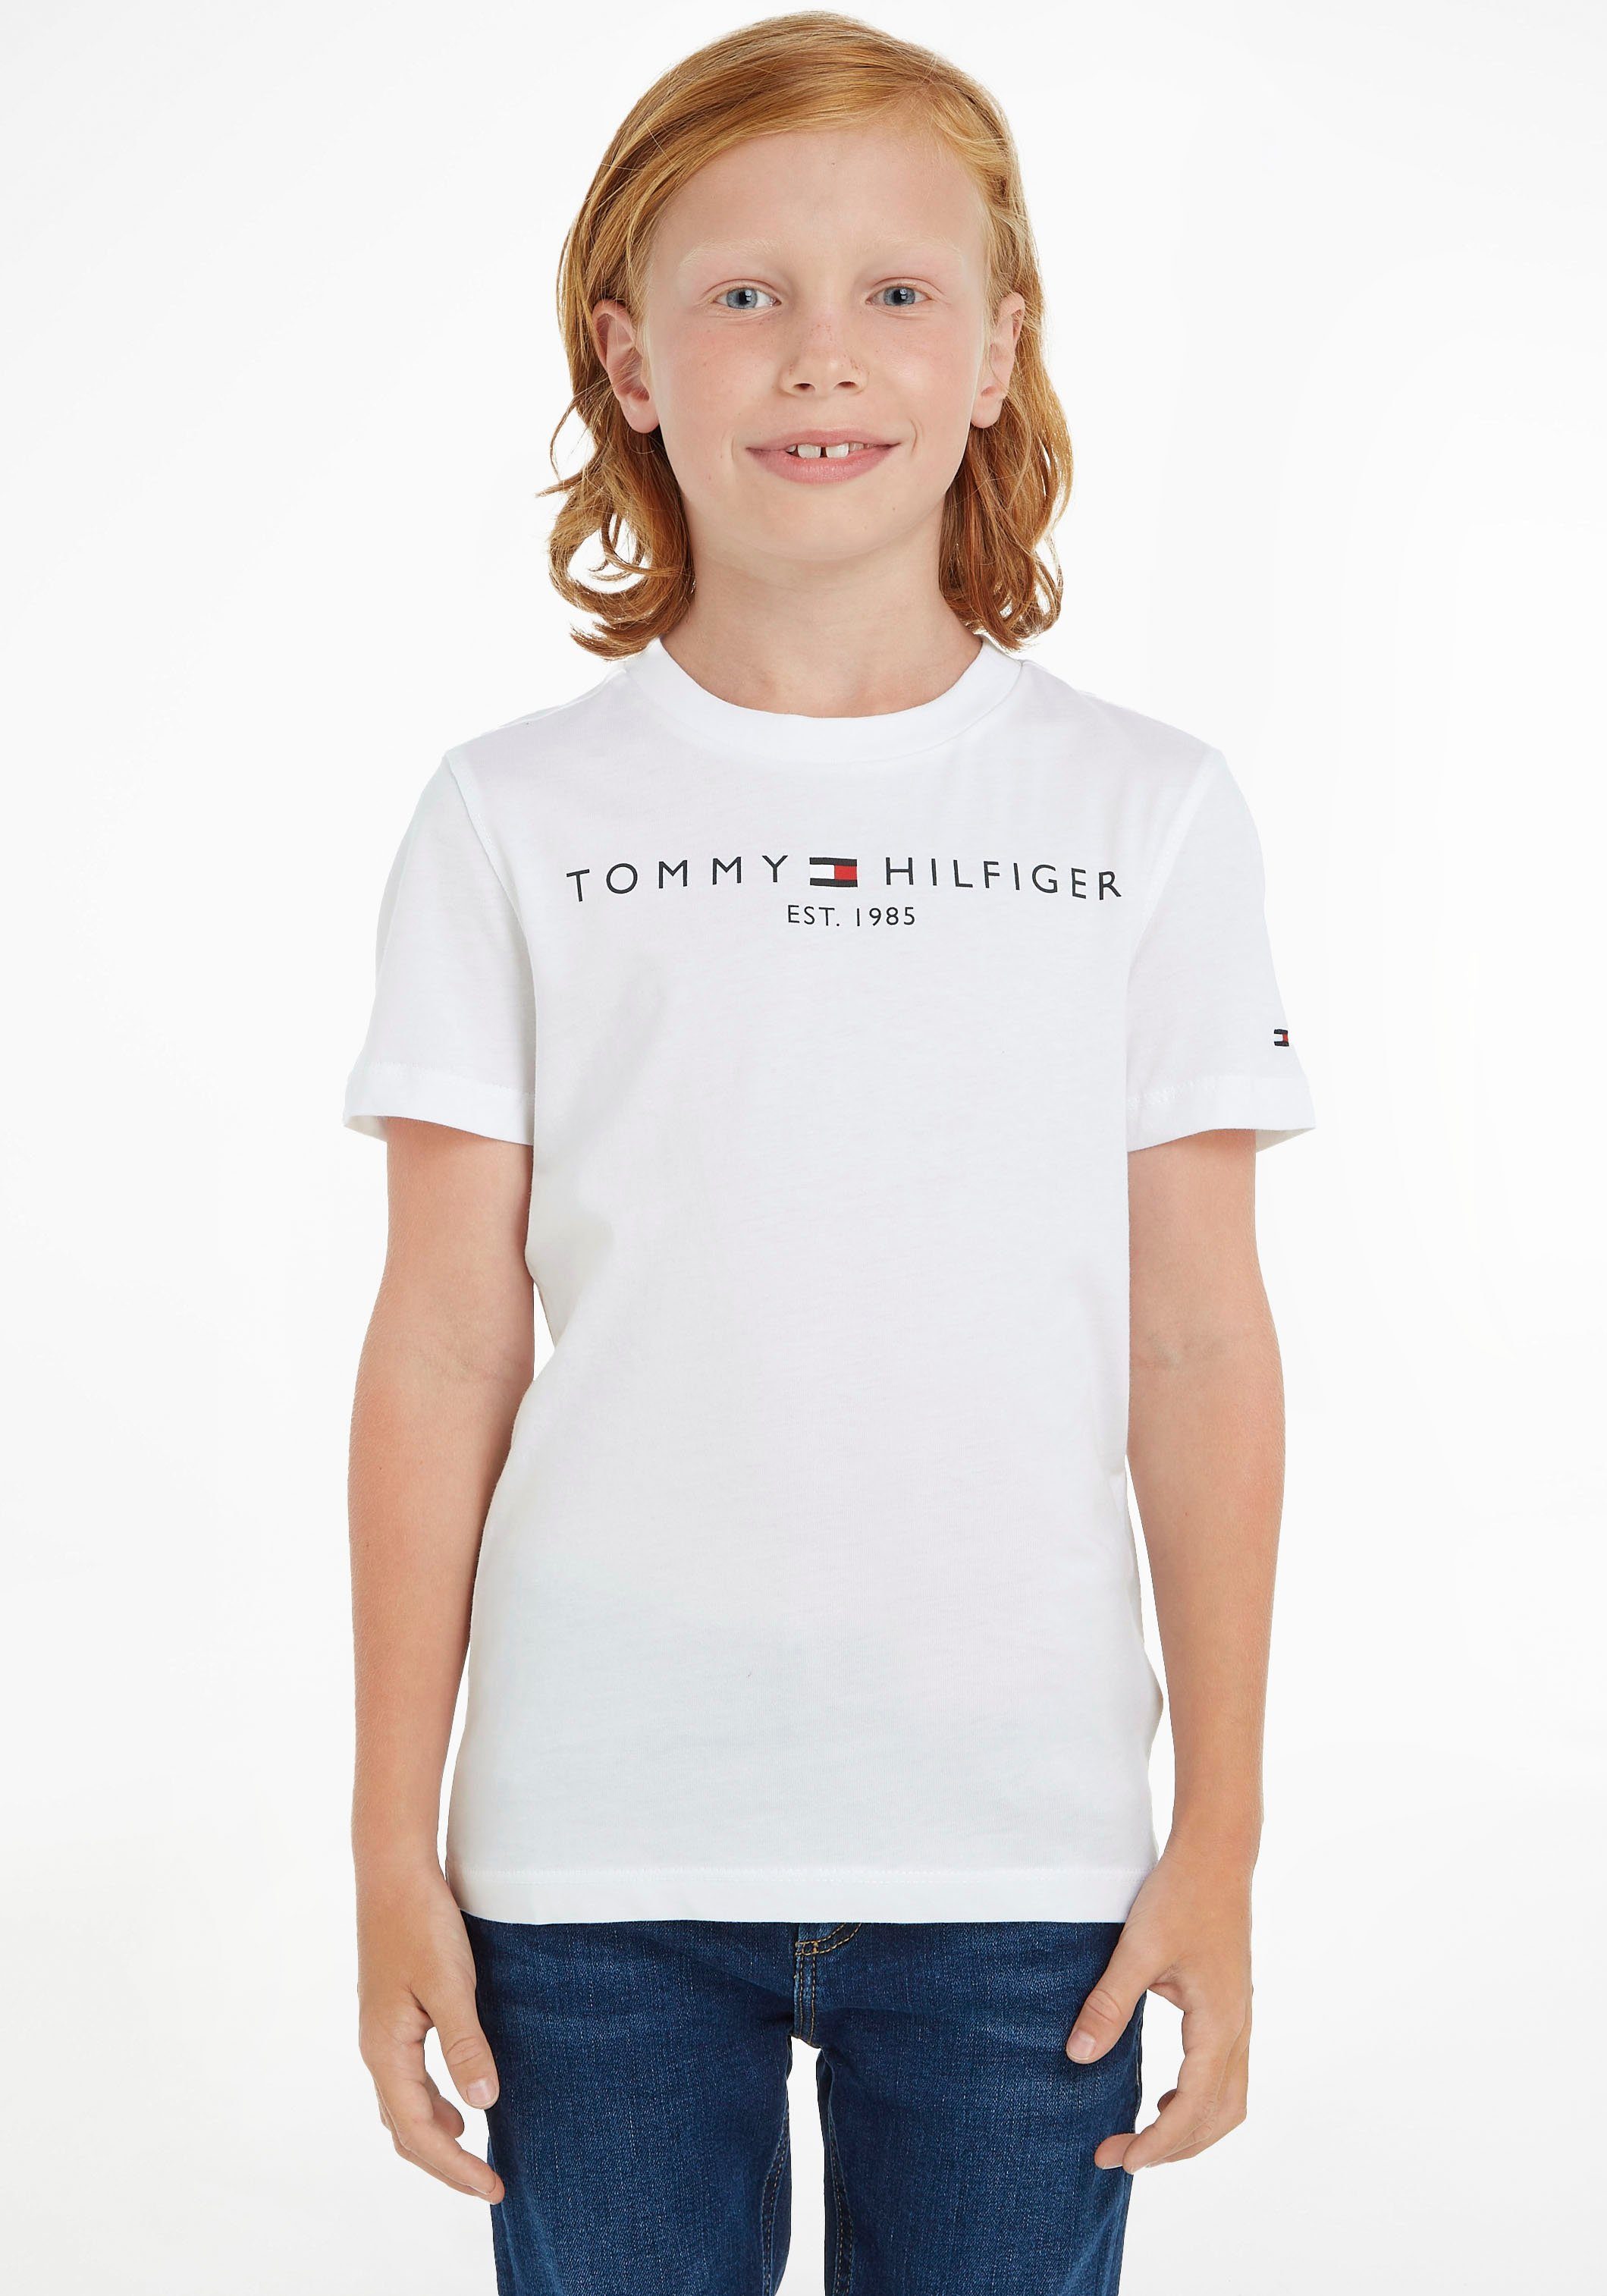 und ESSENTIAL MiniMe,für Hilfiger Tommy Jungen Kinder TEE Junior T-Shirt Mädchen Kids